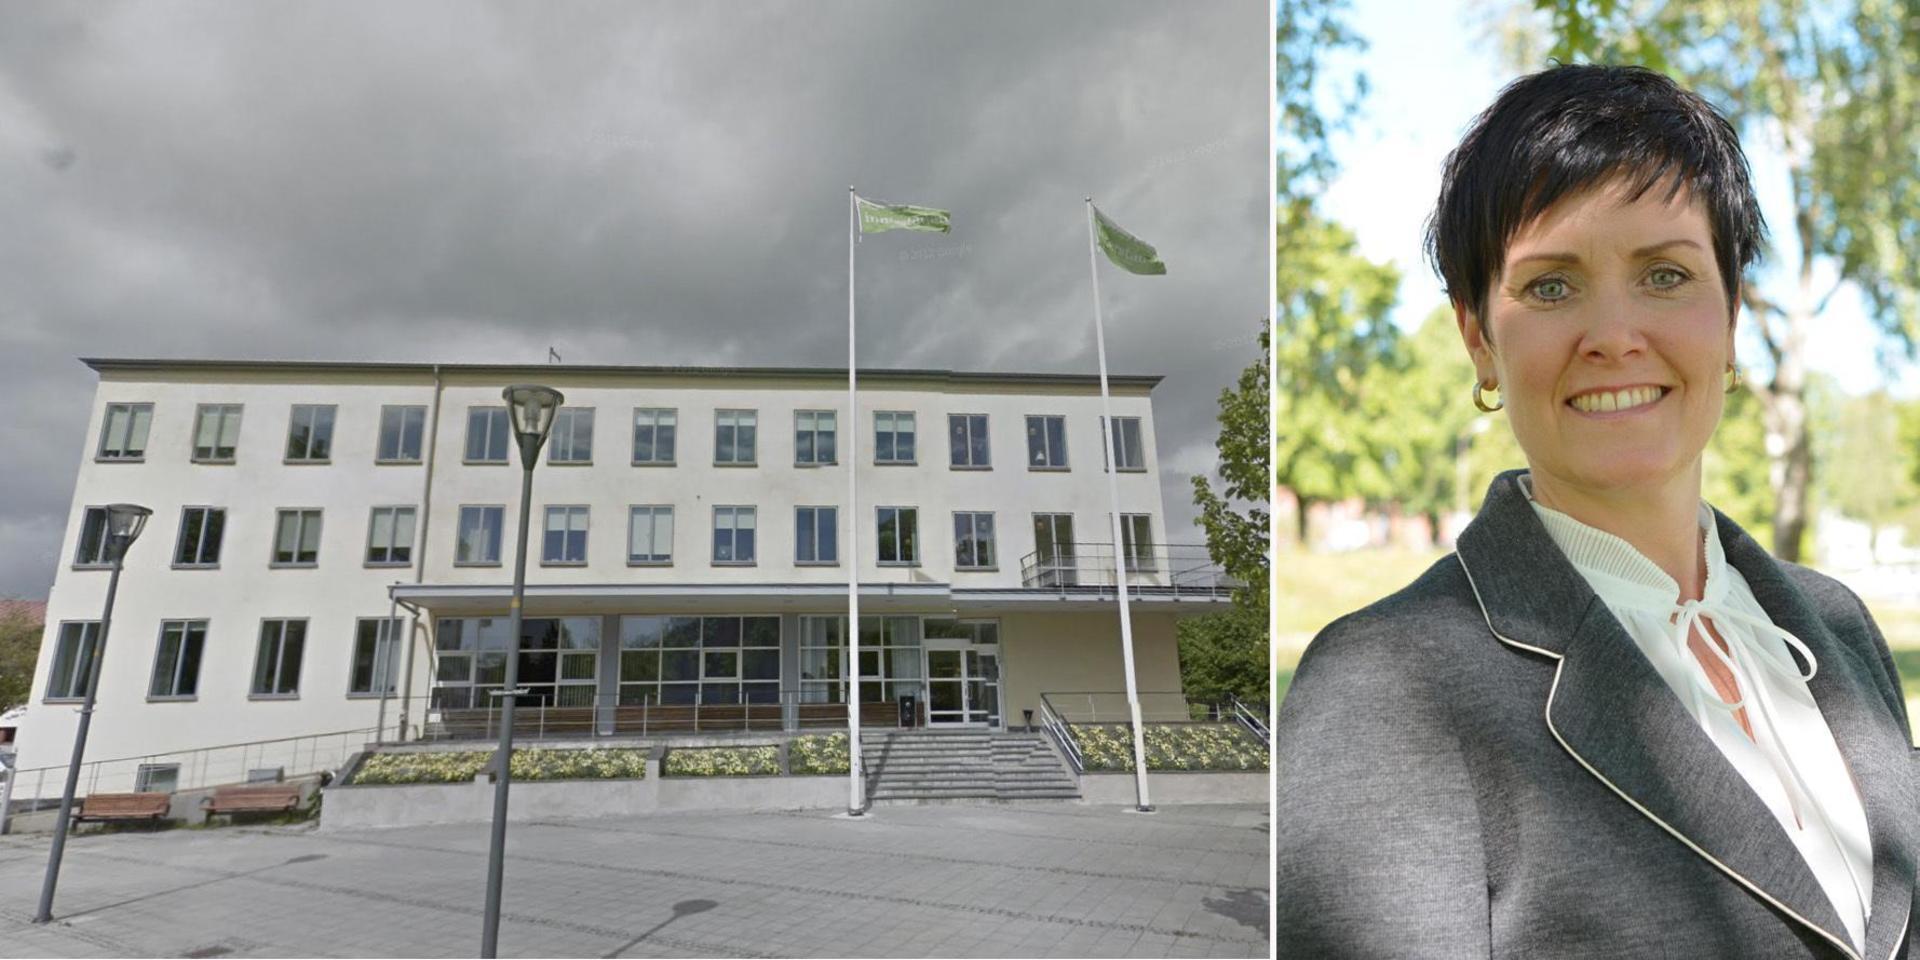 Konkurrensverket stämmer Kungsbacka kommun för en otillåten direktupphandling. Kommundirektör Malin Aronsson kommer att yrka på avslag.